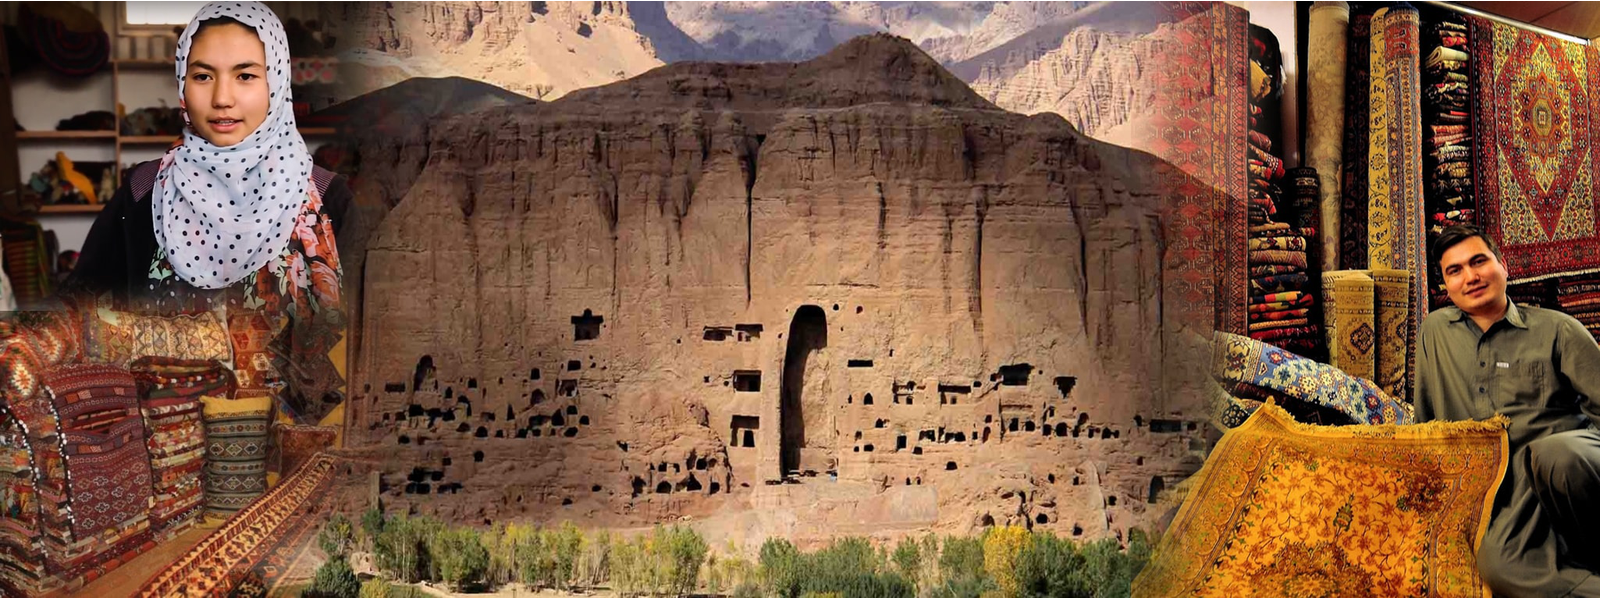 Bamiyan weavers